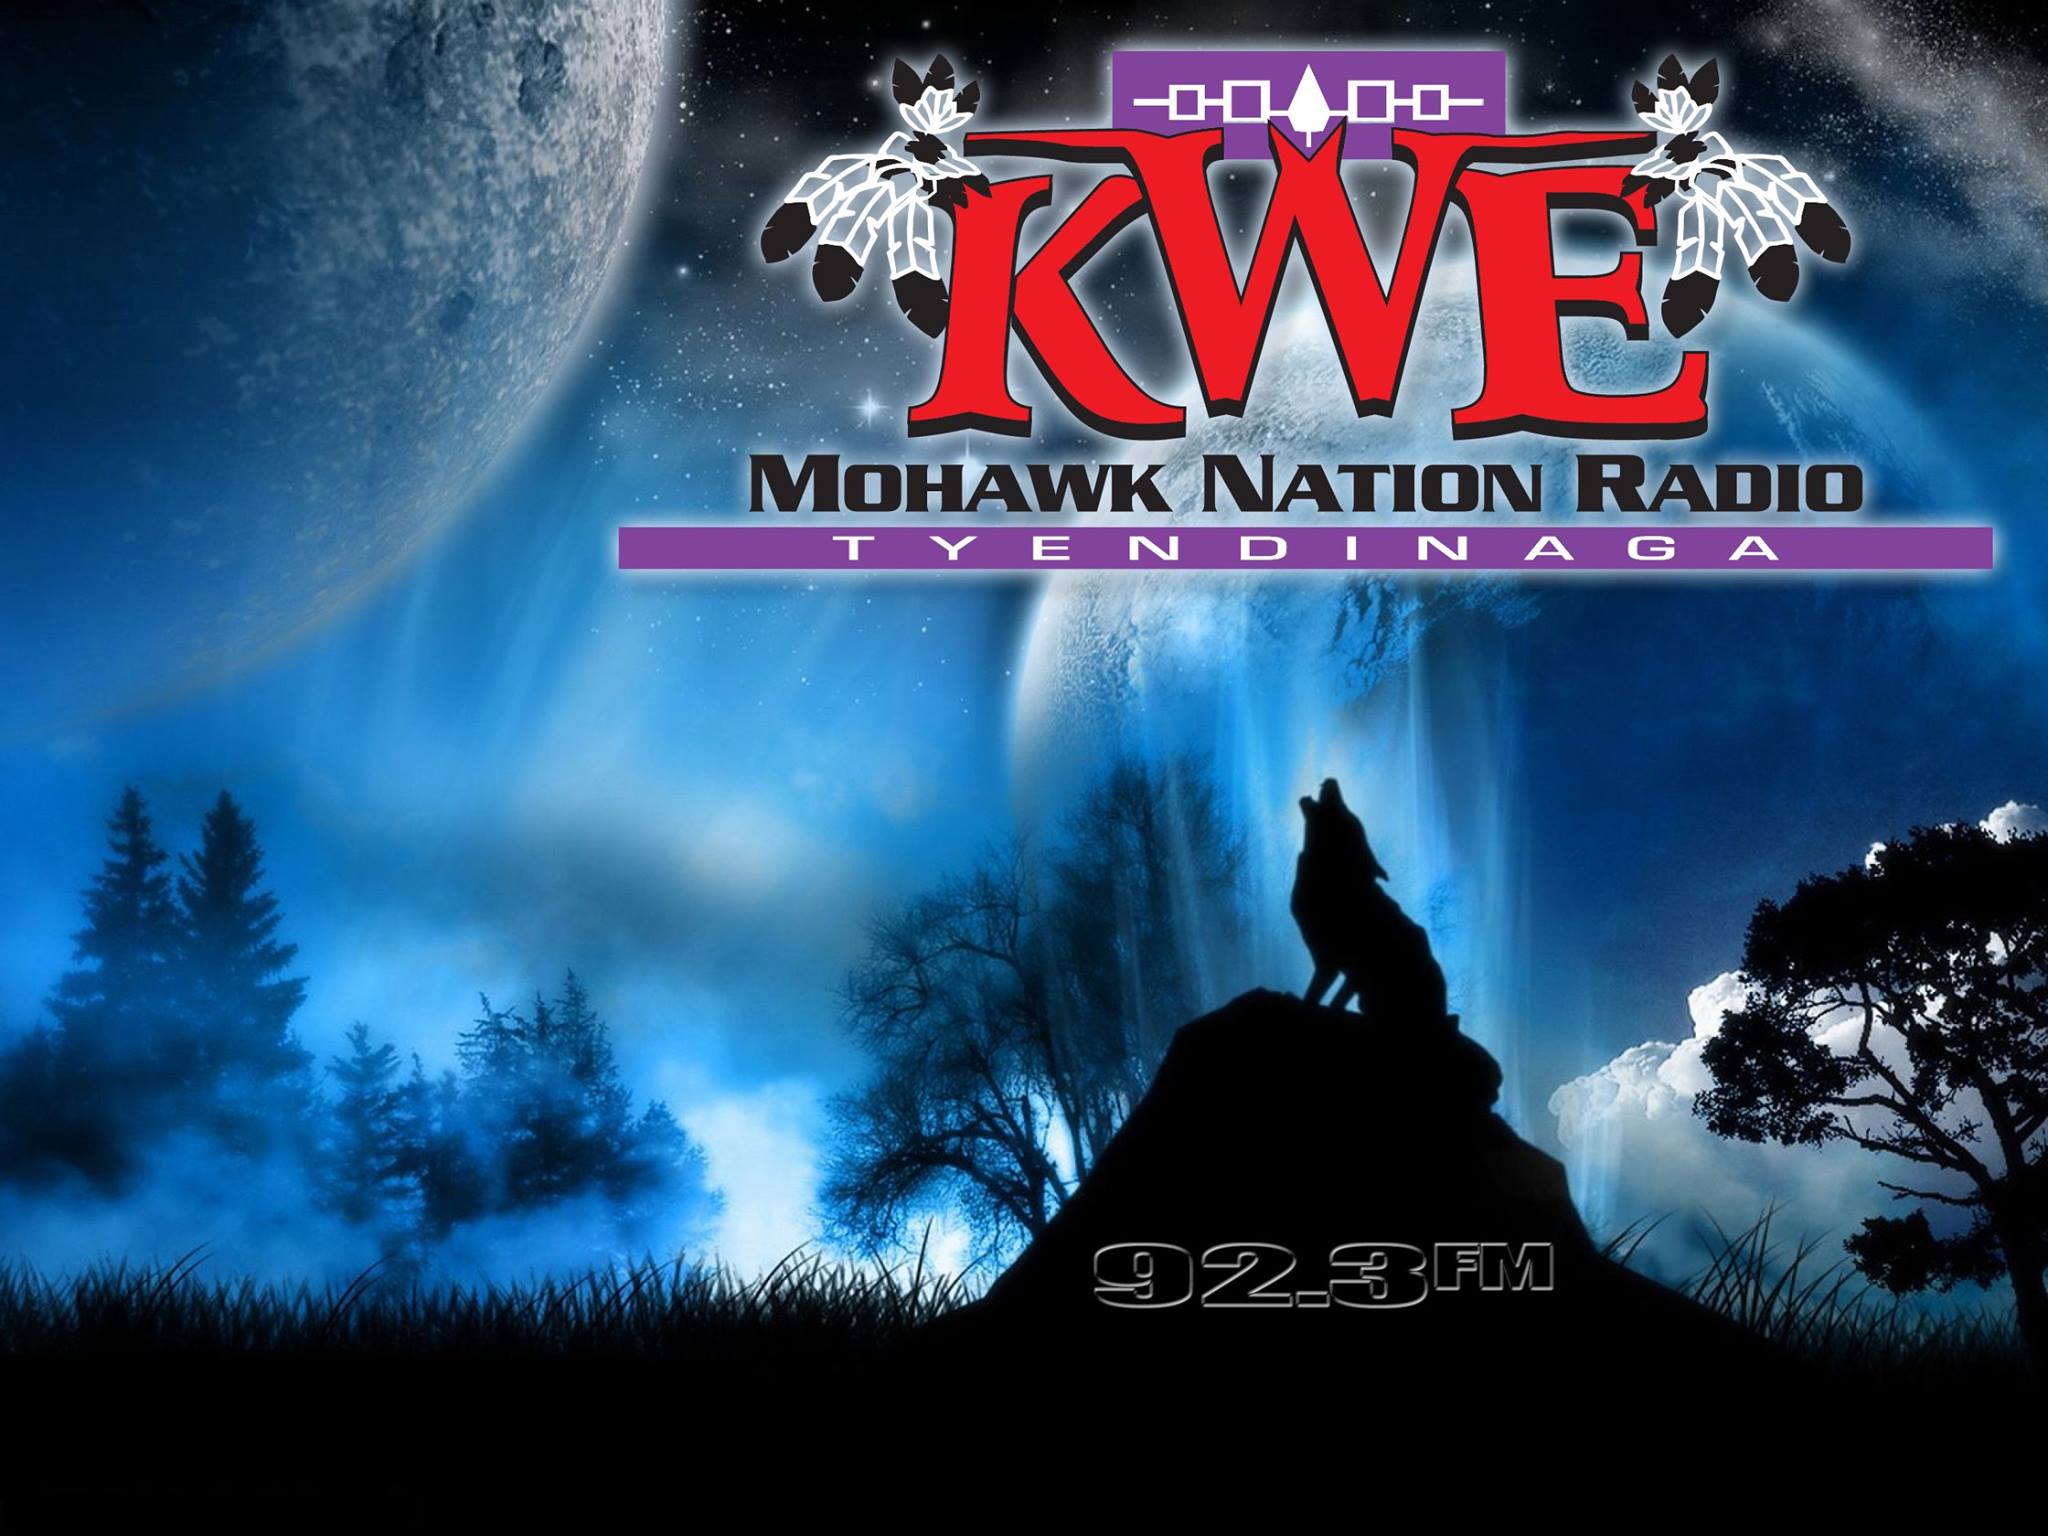 CKWE 92.3 FM Mohawk Nation Radio